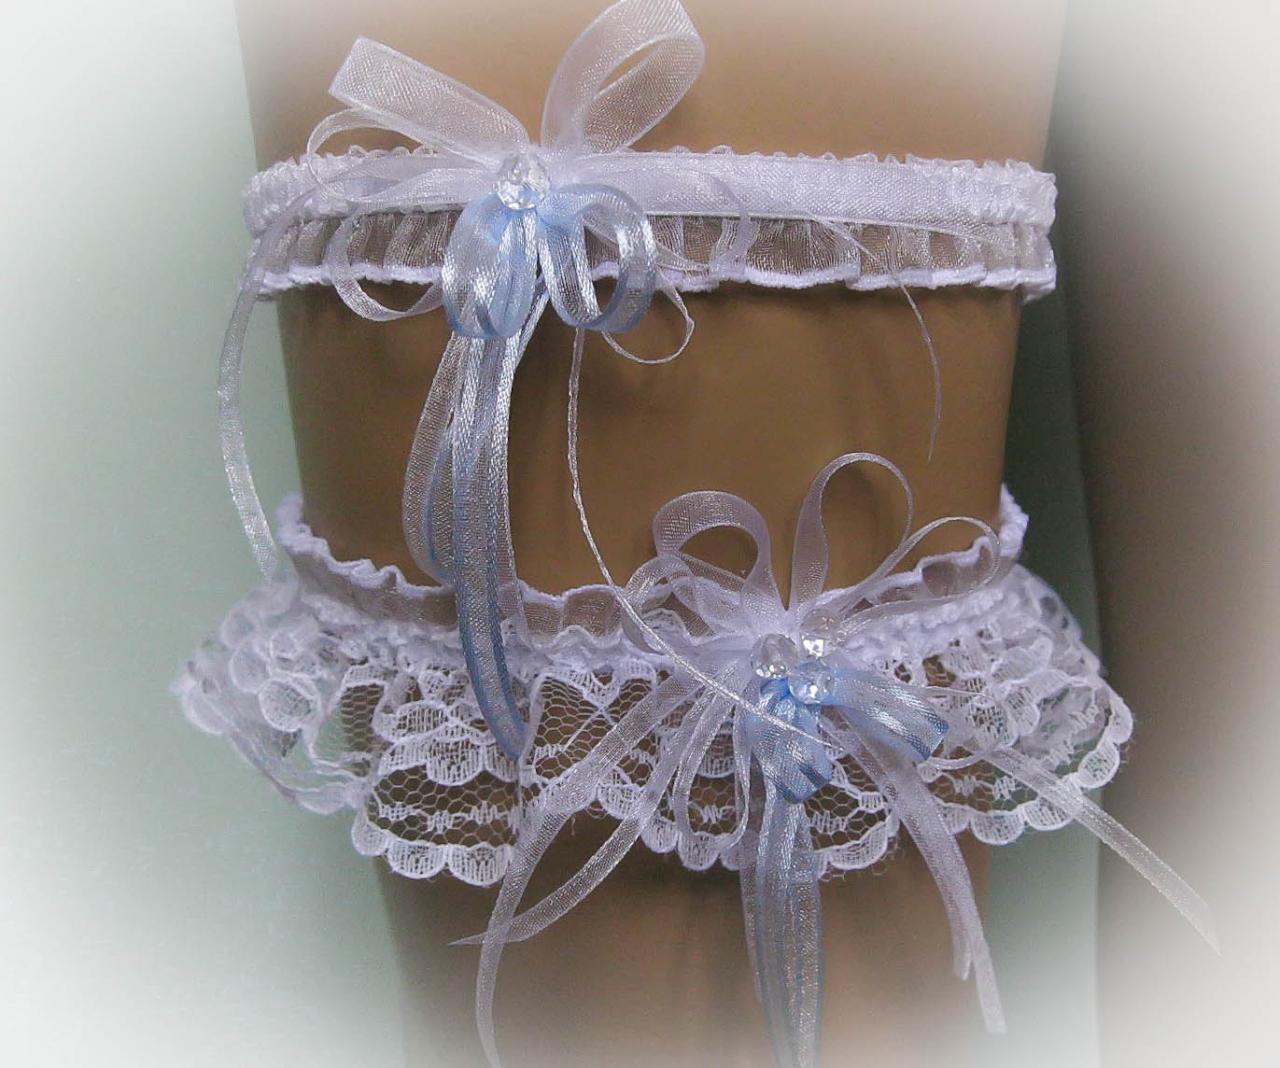 Lace Wedding Garter Set With Crystal Beads, White And Blue, Bridal Garter Set, Vintage Garter, Stretch Garter, Crystal Garter, Prom Garter